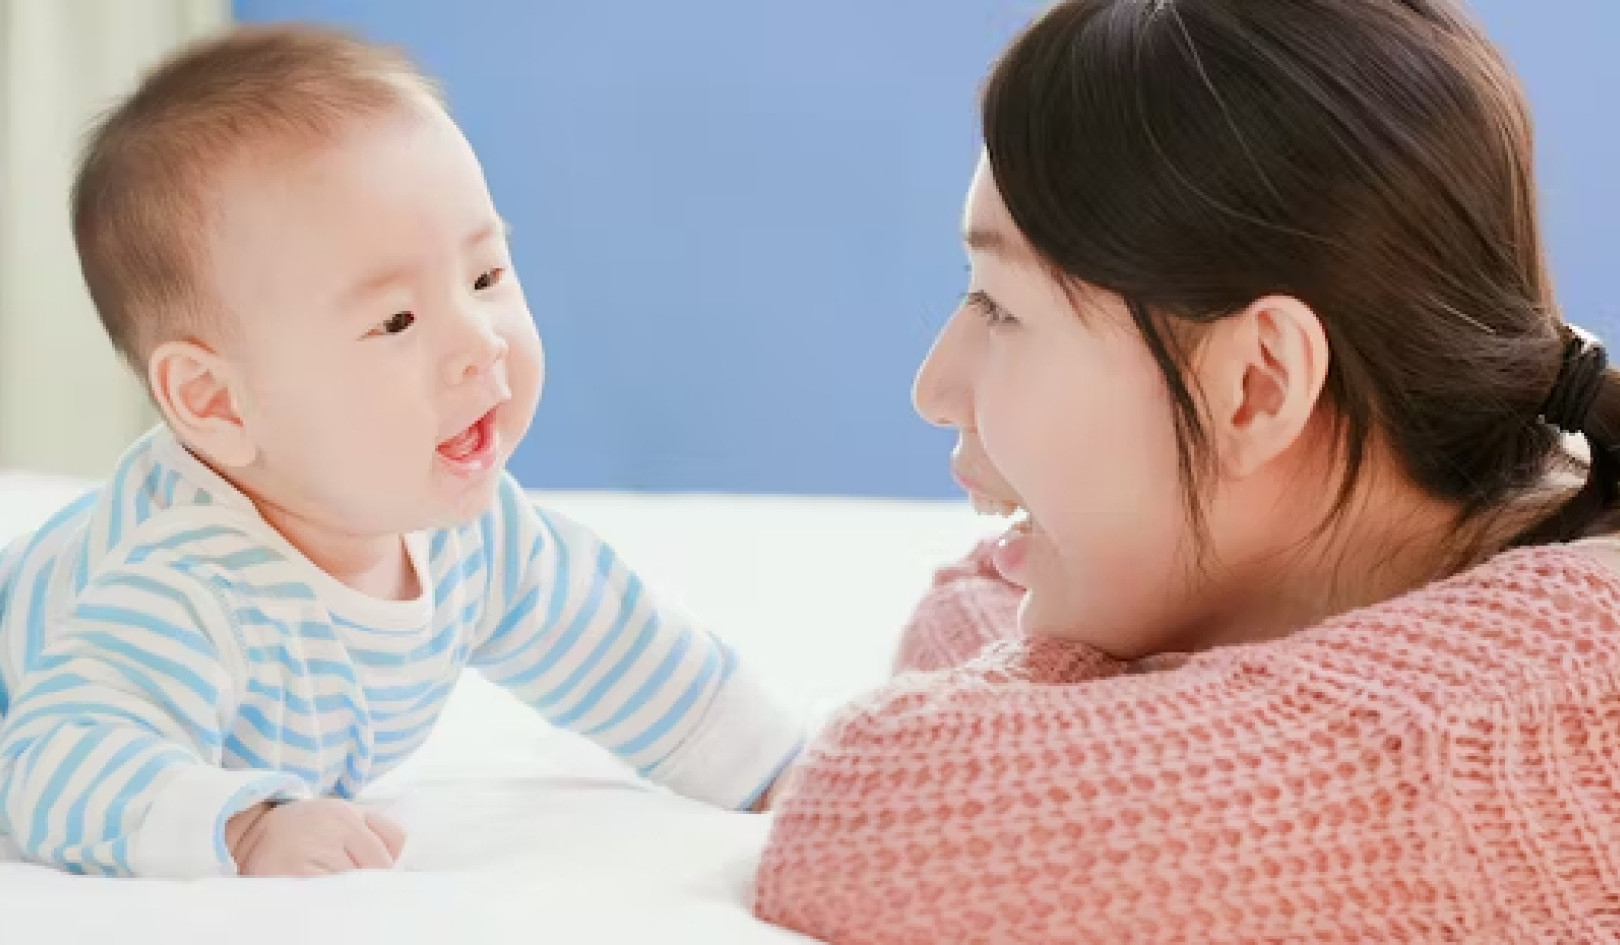 שיחה עם תינוקות עשויה לתרום להתפתחות המוח - הנה איך לעשות זאת